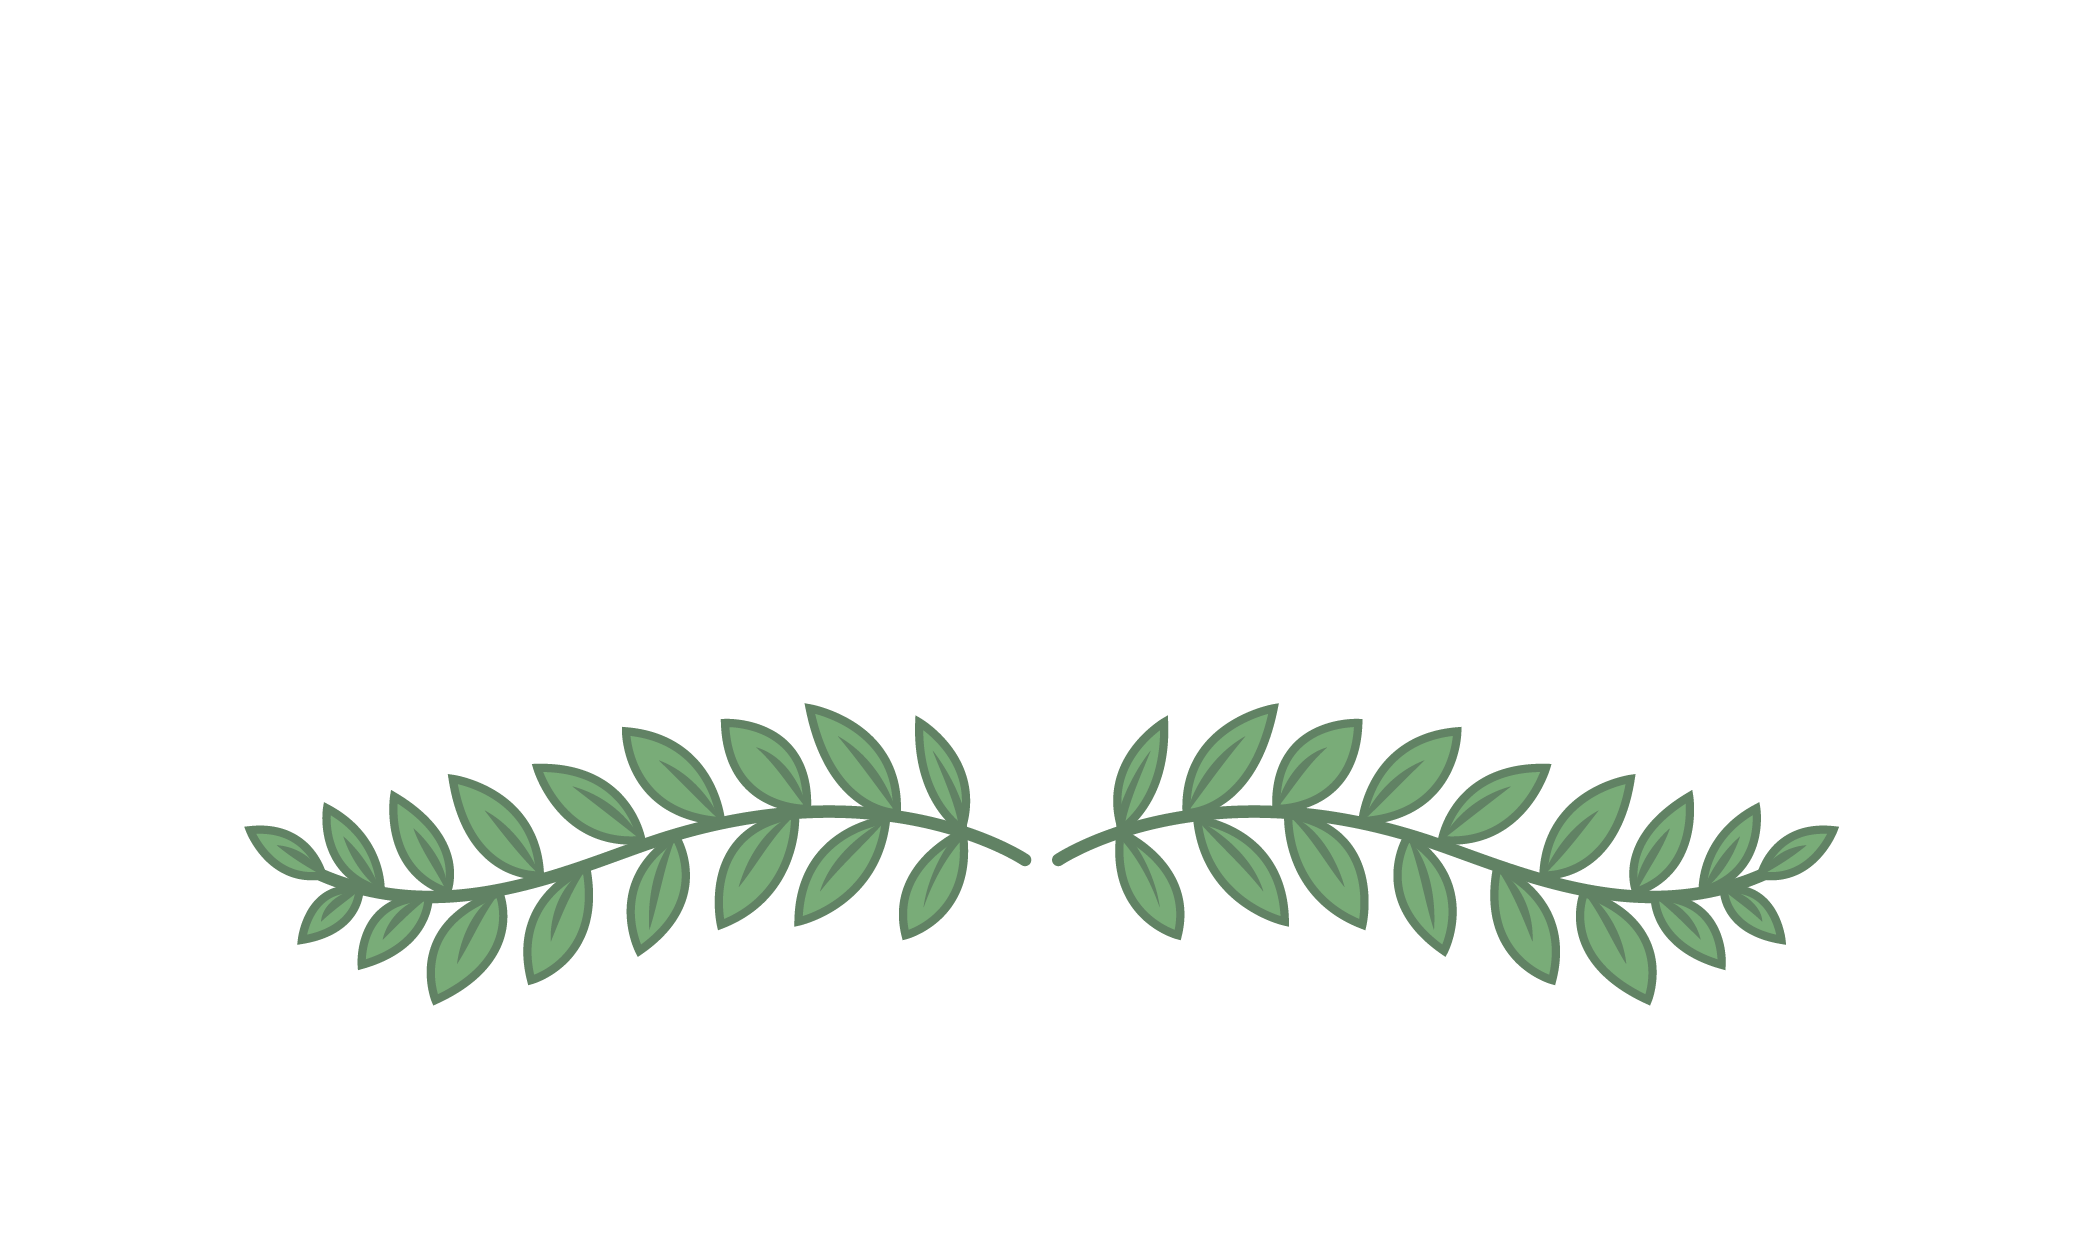 Iolcus